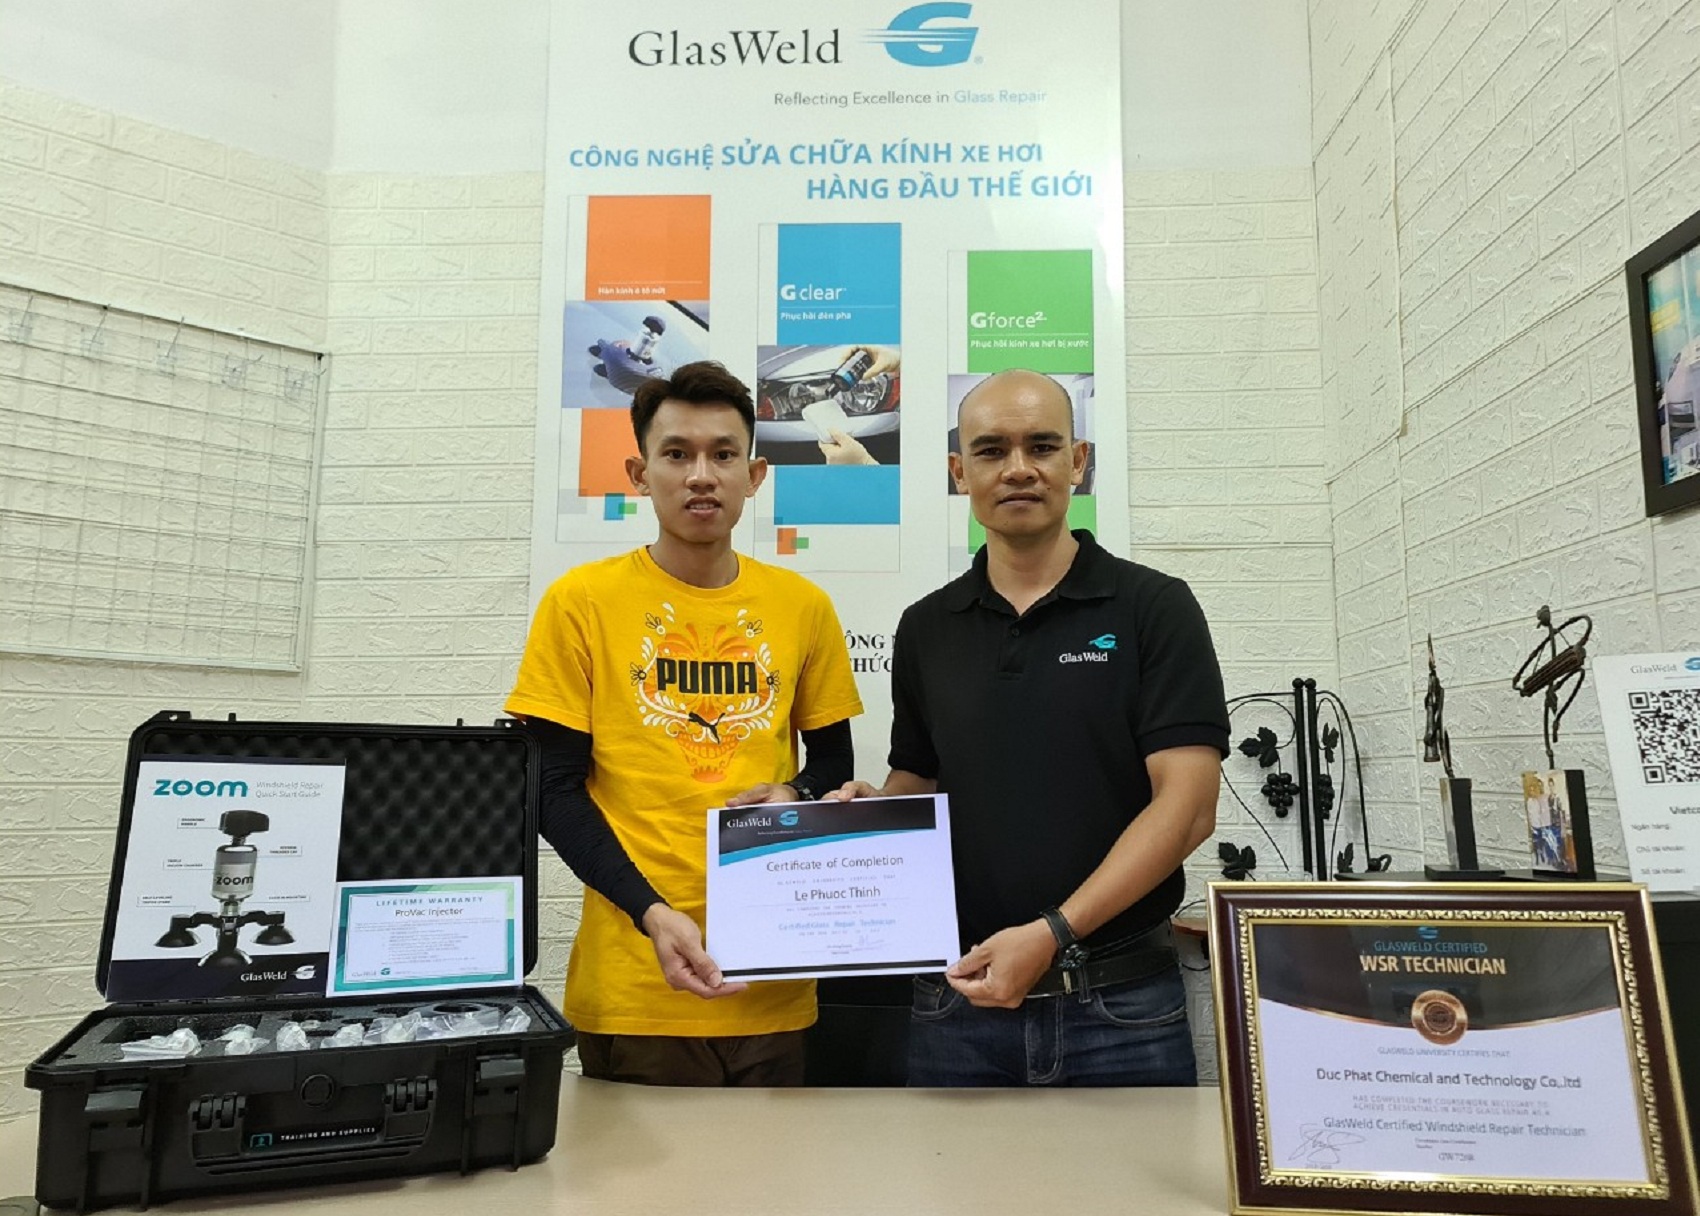 GlasWeld - Công nghệ sửa chữa kính ô tô hàng đầu thế giới